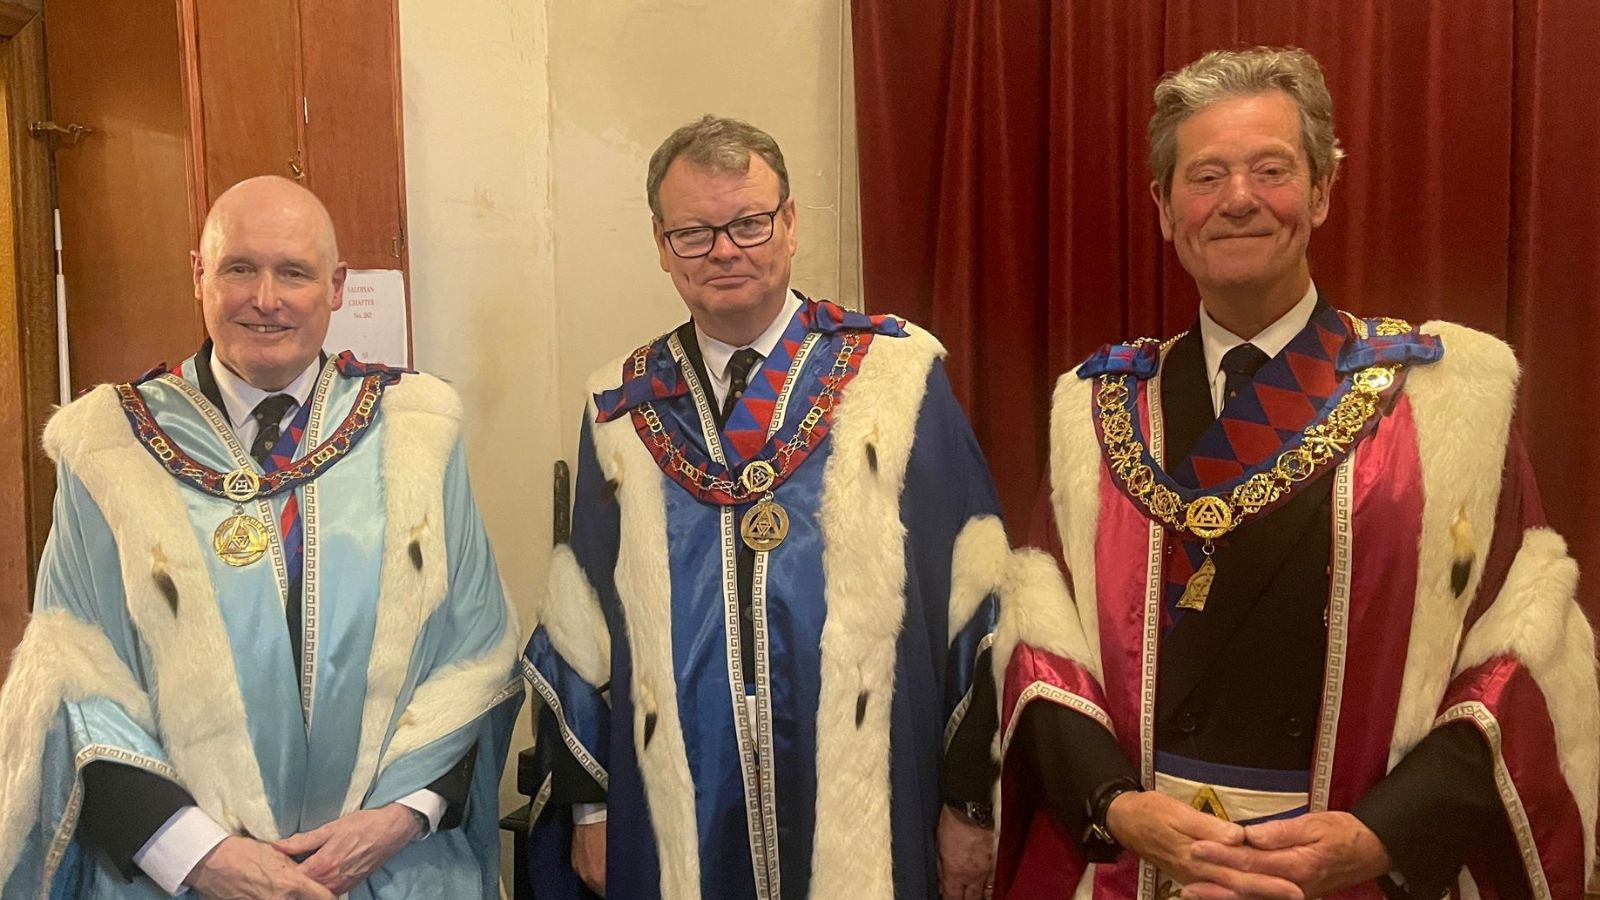 The Three Provincial Grand Principals of Shropshire in the masonic regalia